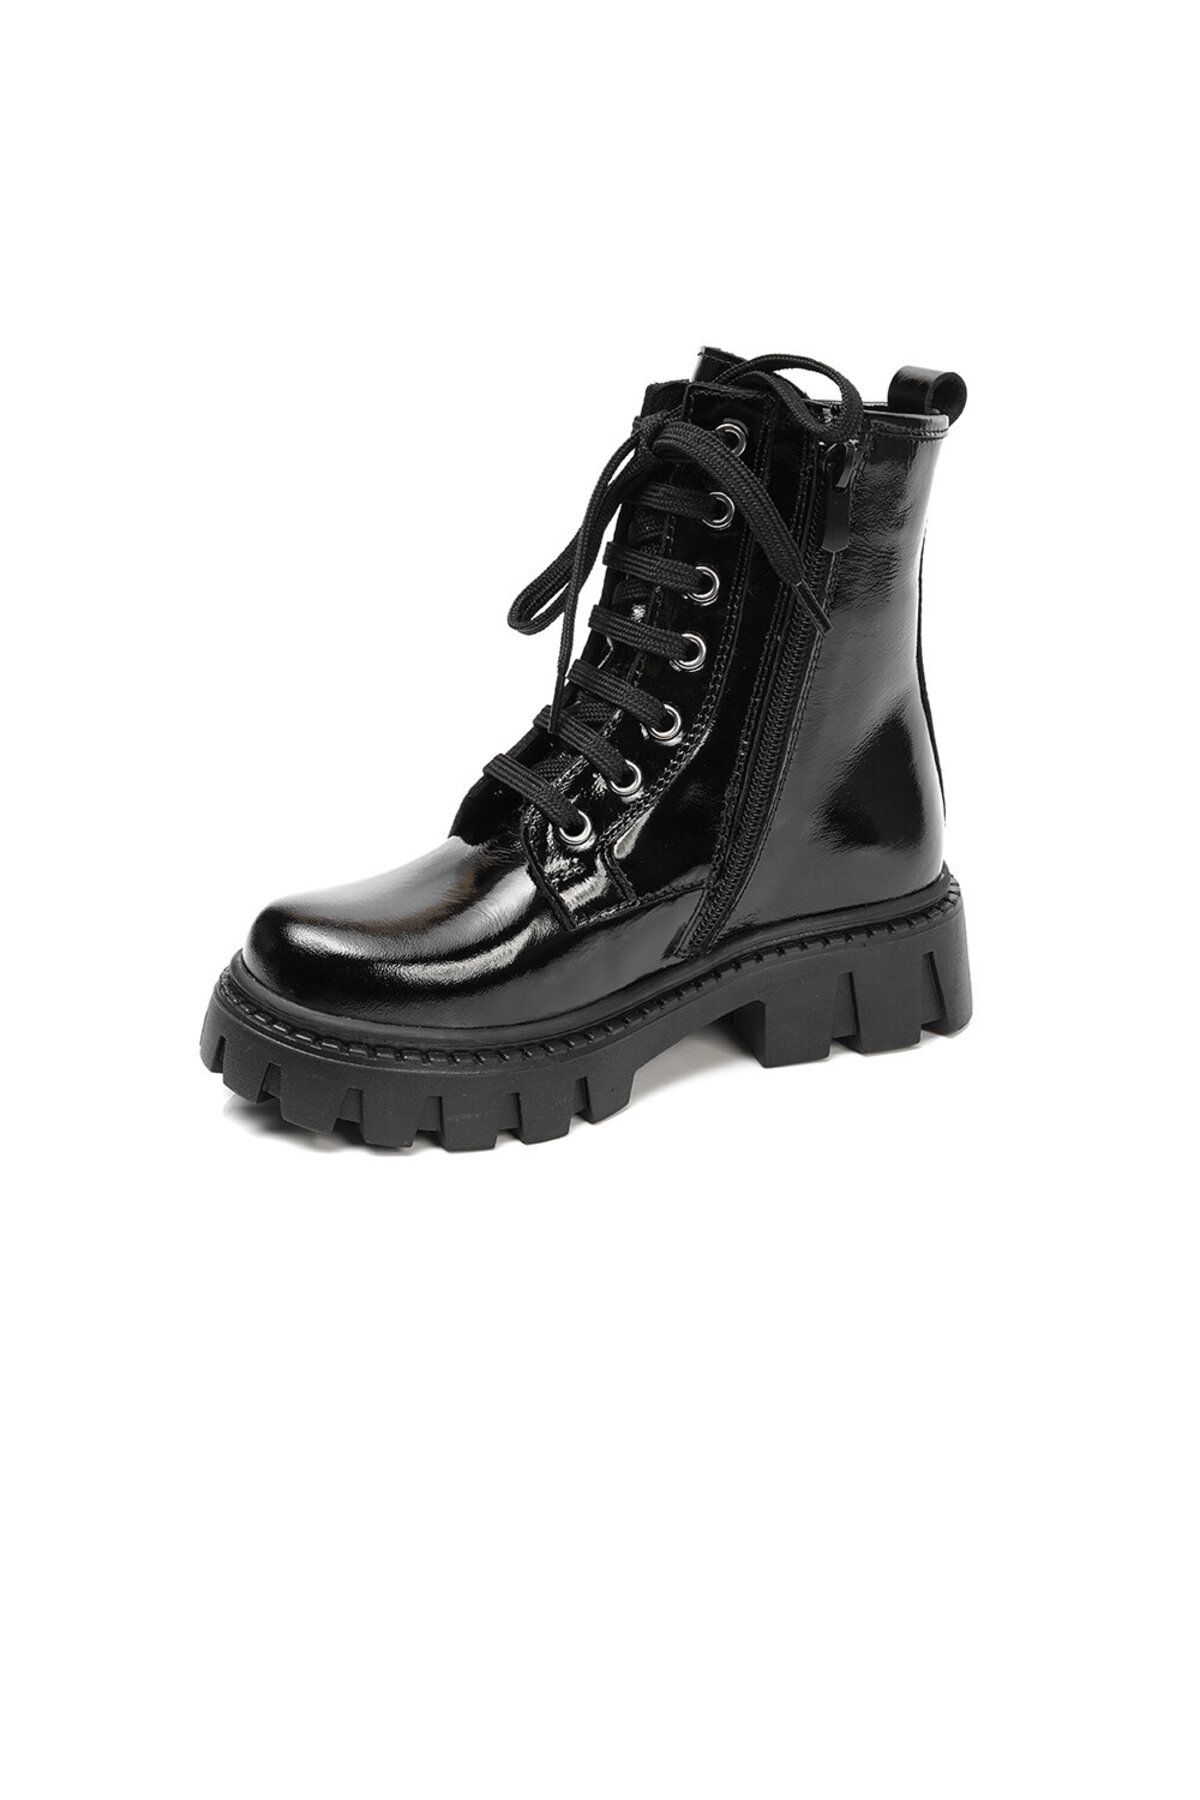 Greyder Çocuk Siyah Hakiki Deri Ayakkabı 3k5zb66678 Fiyatı, Yorumları ...